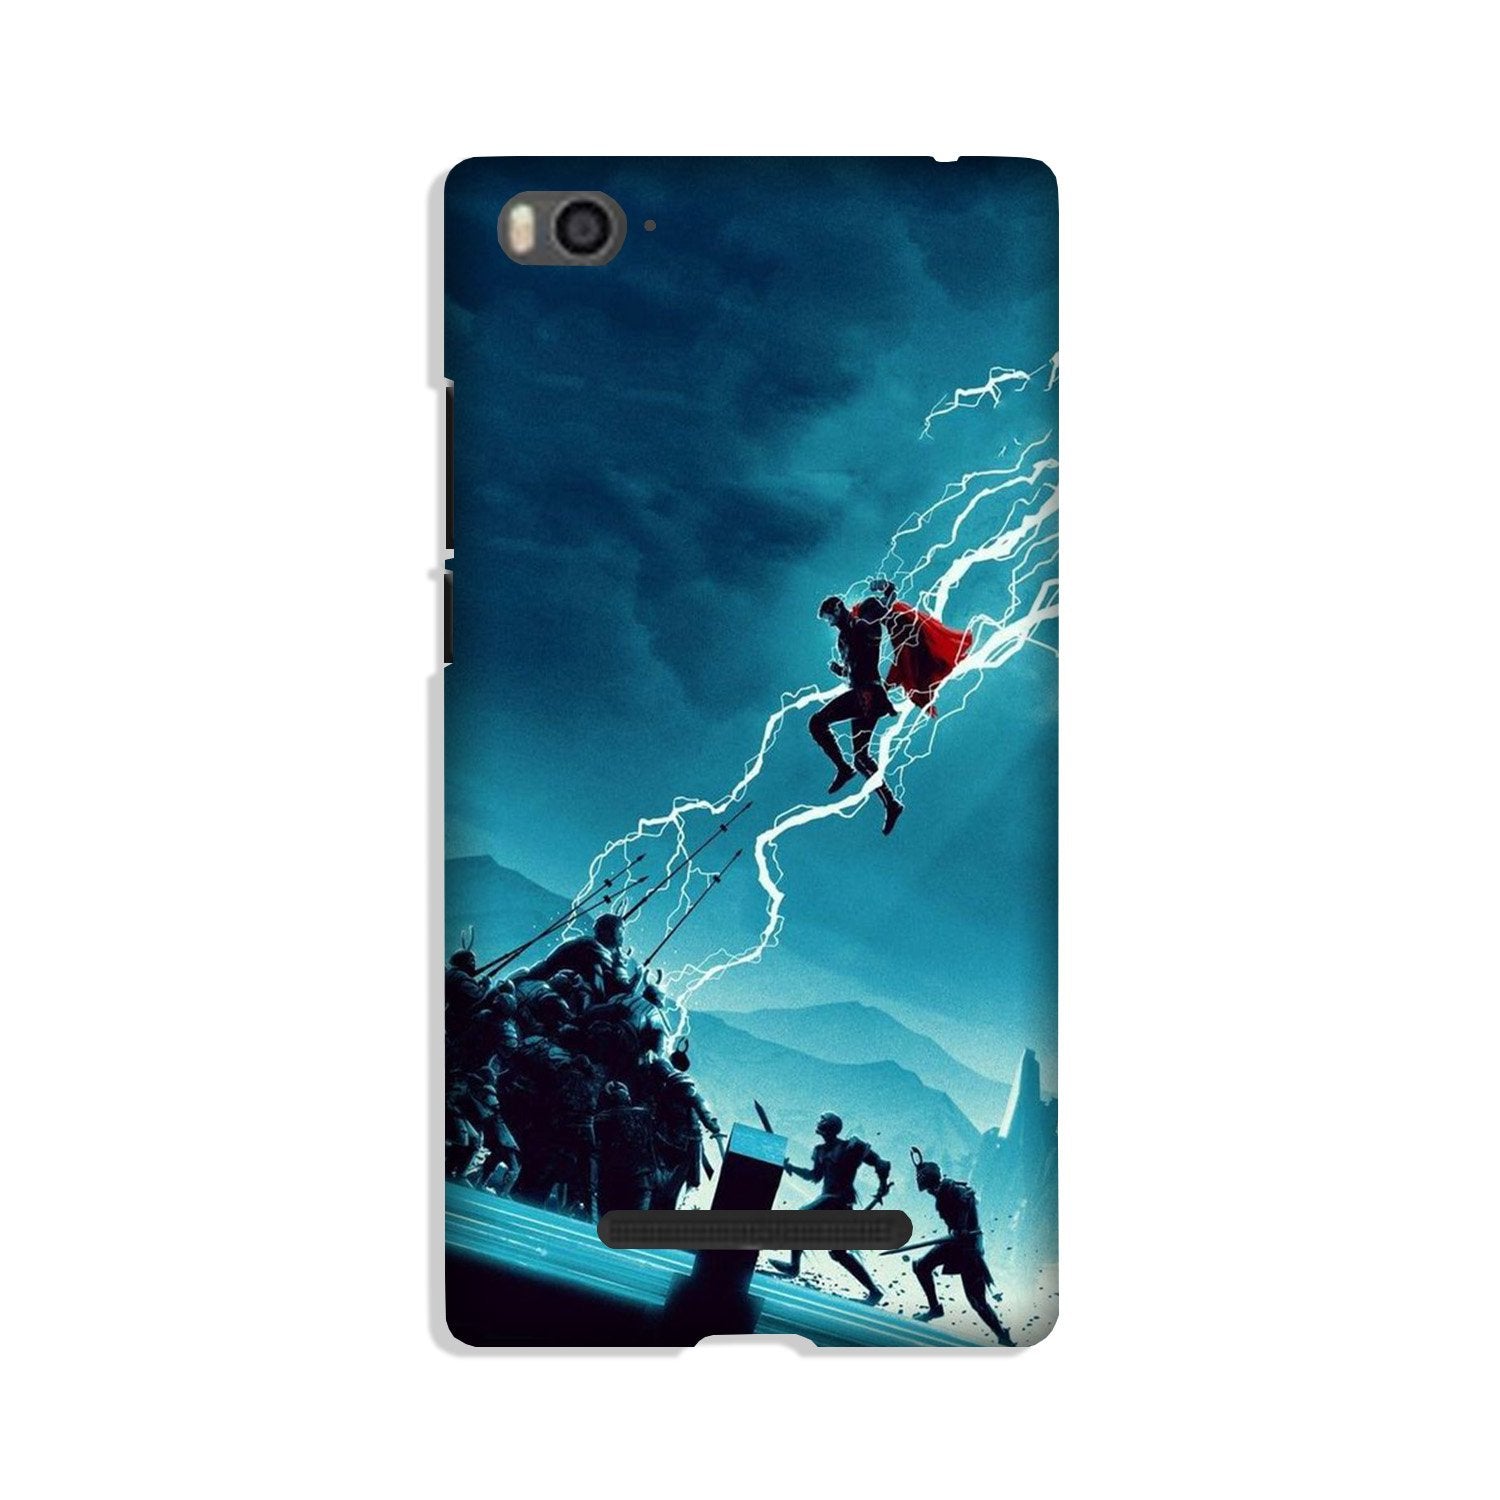 Thor Avengers Case for Xiaomi Mi 4i (Design No. 243)